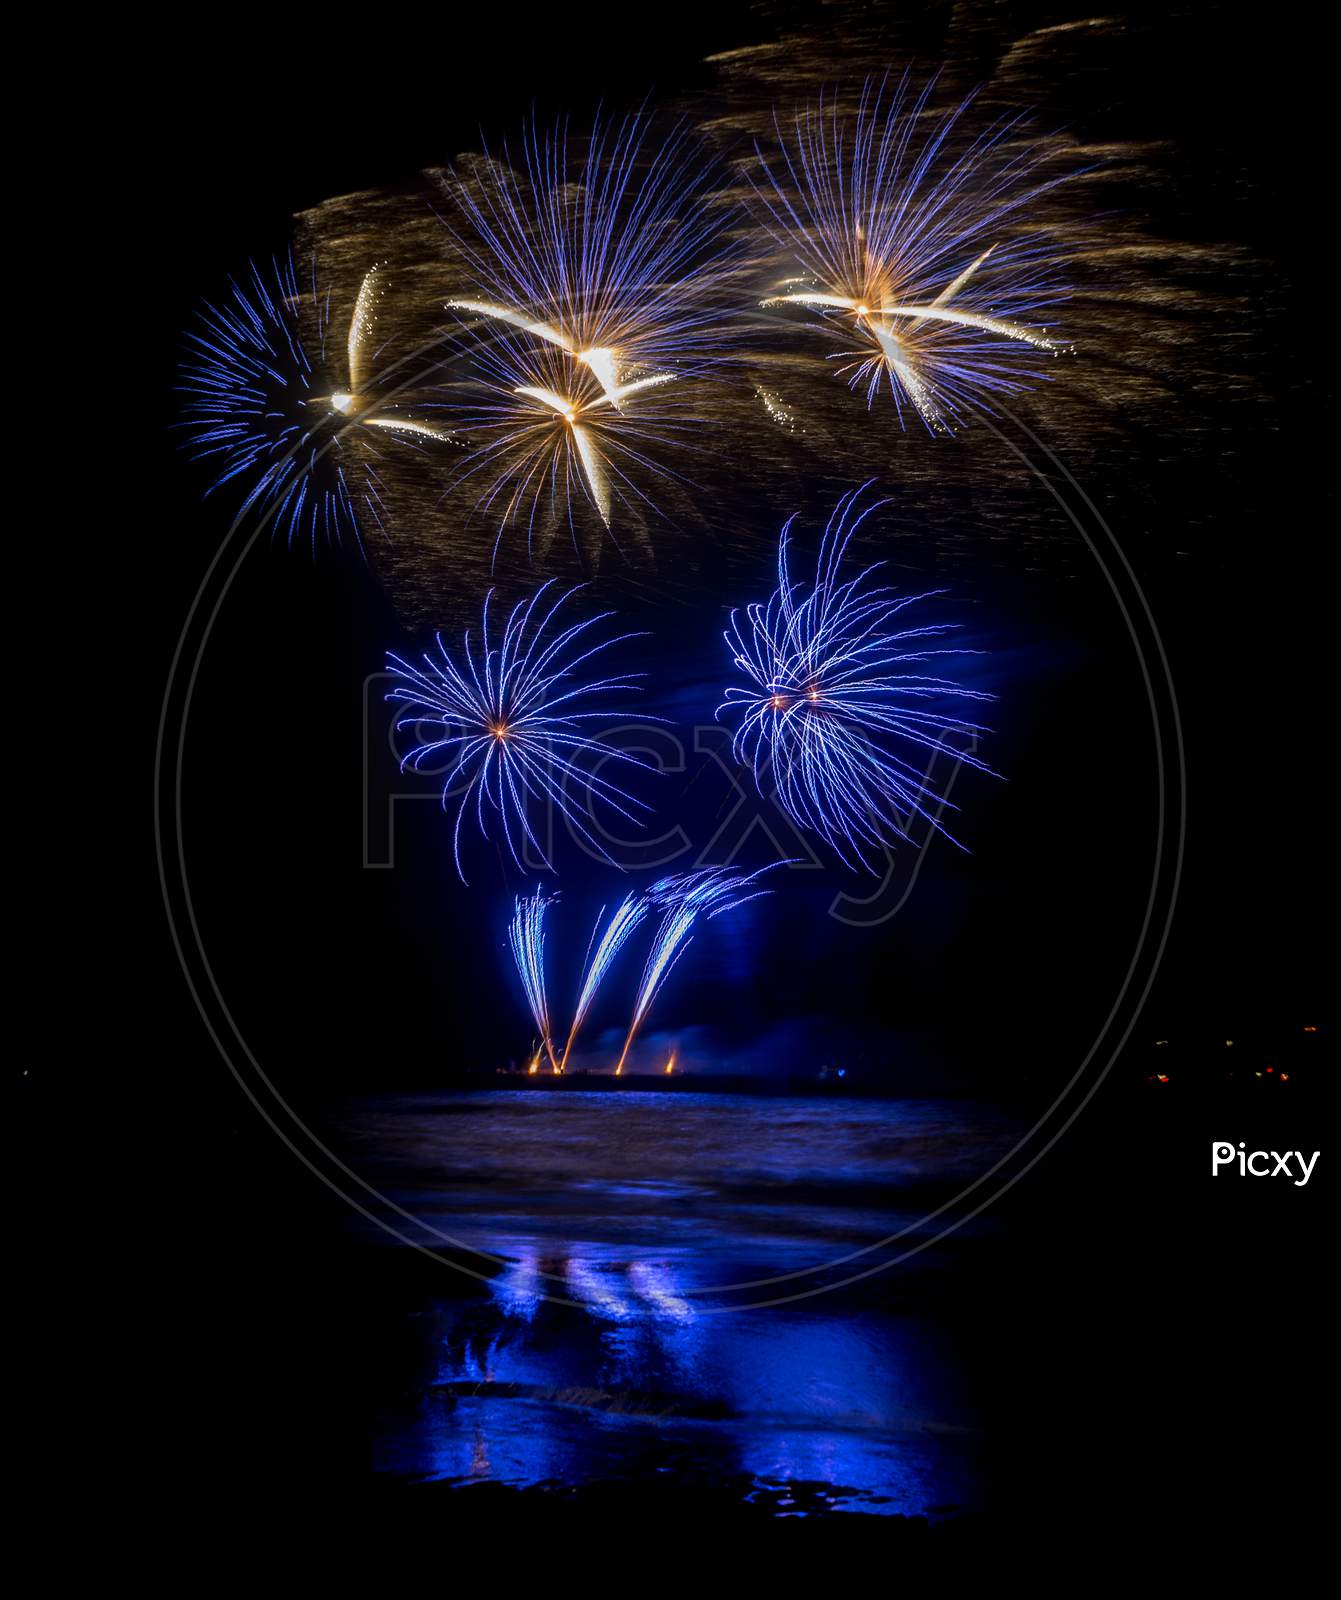 Annual Summer Fireworks Event At Scheveningen Beach In Den Haag On 17Th August By Japan